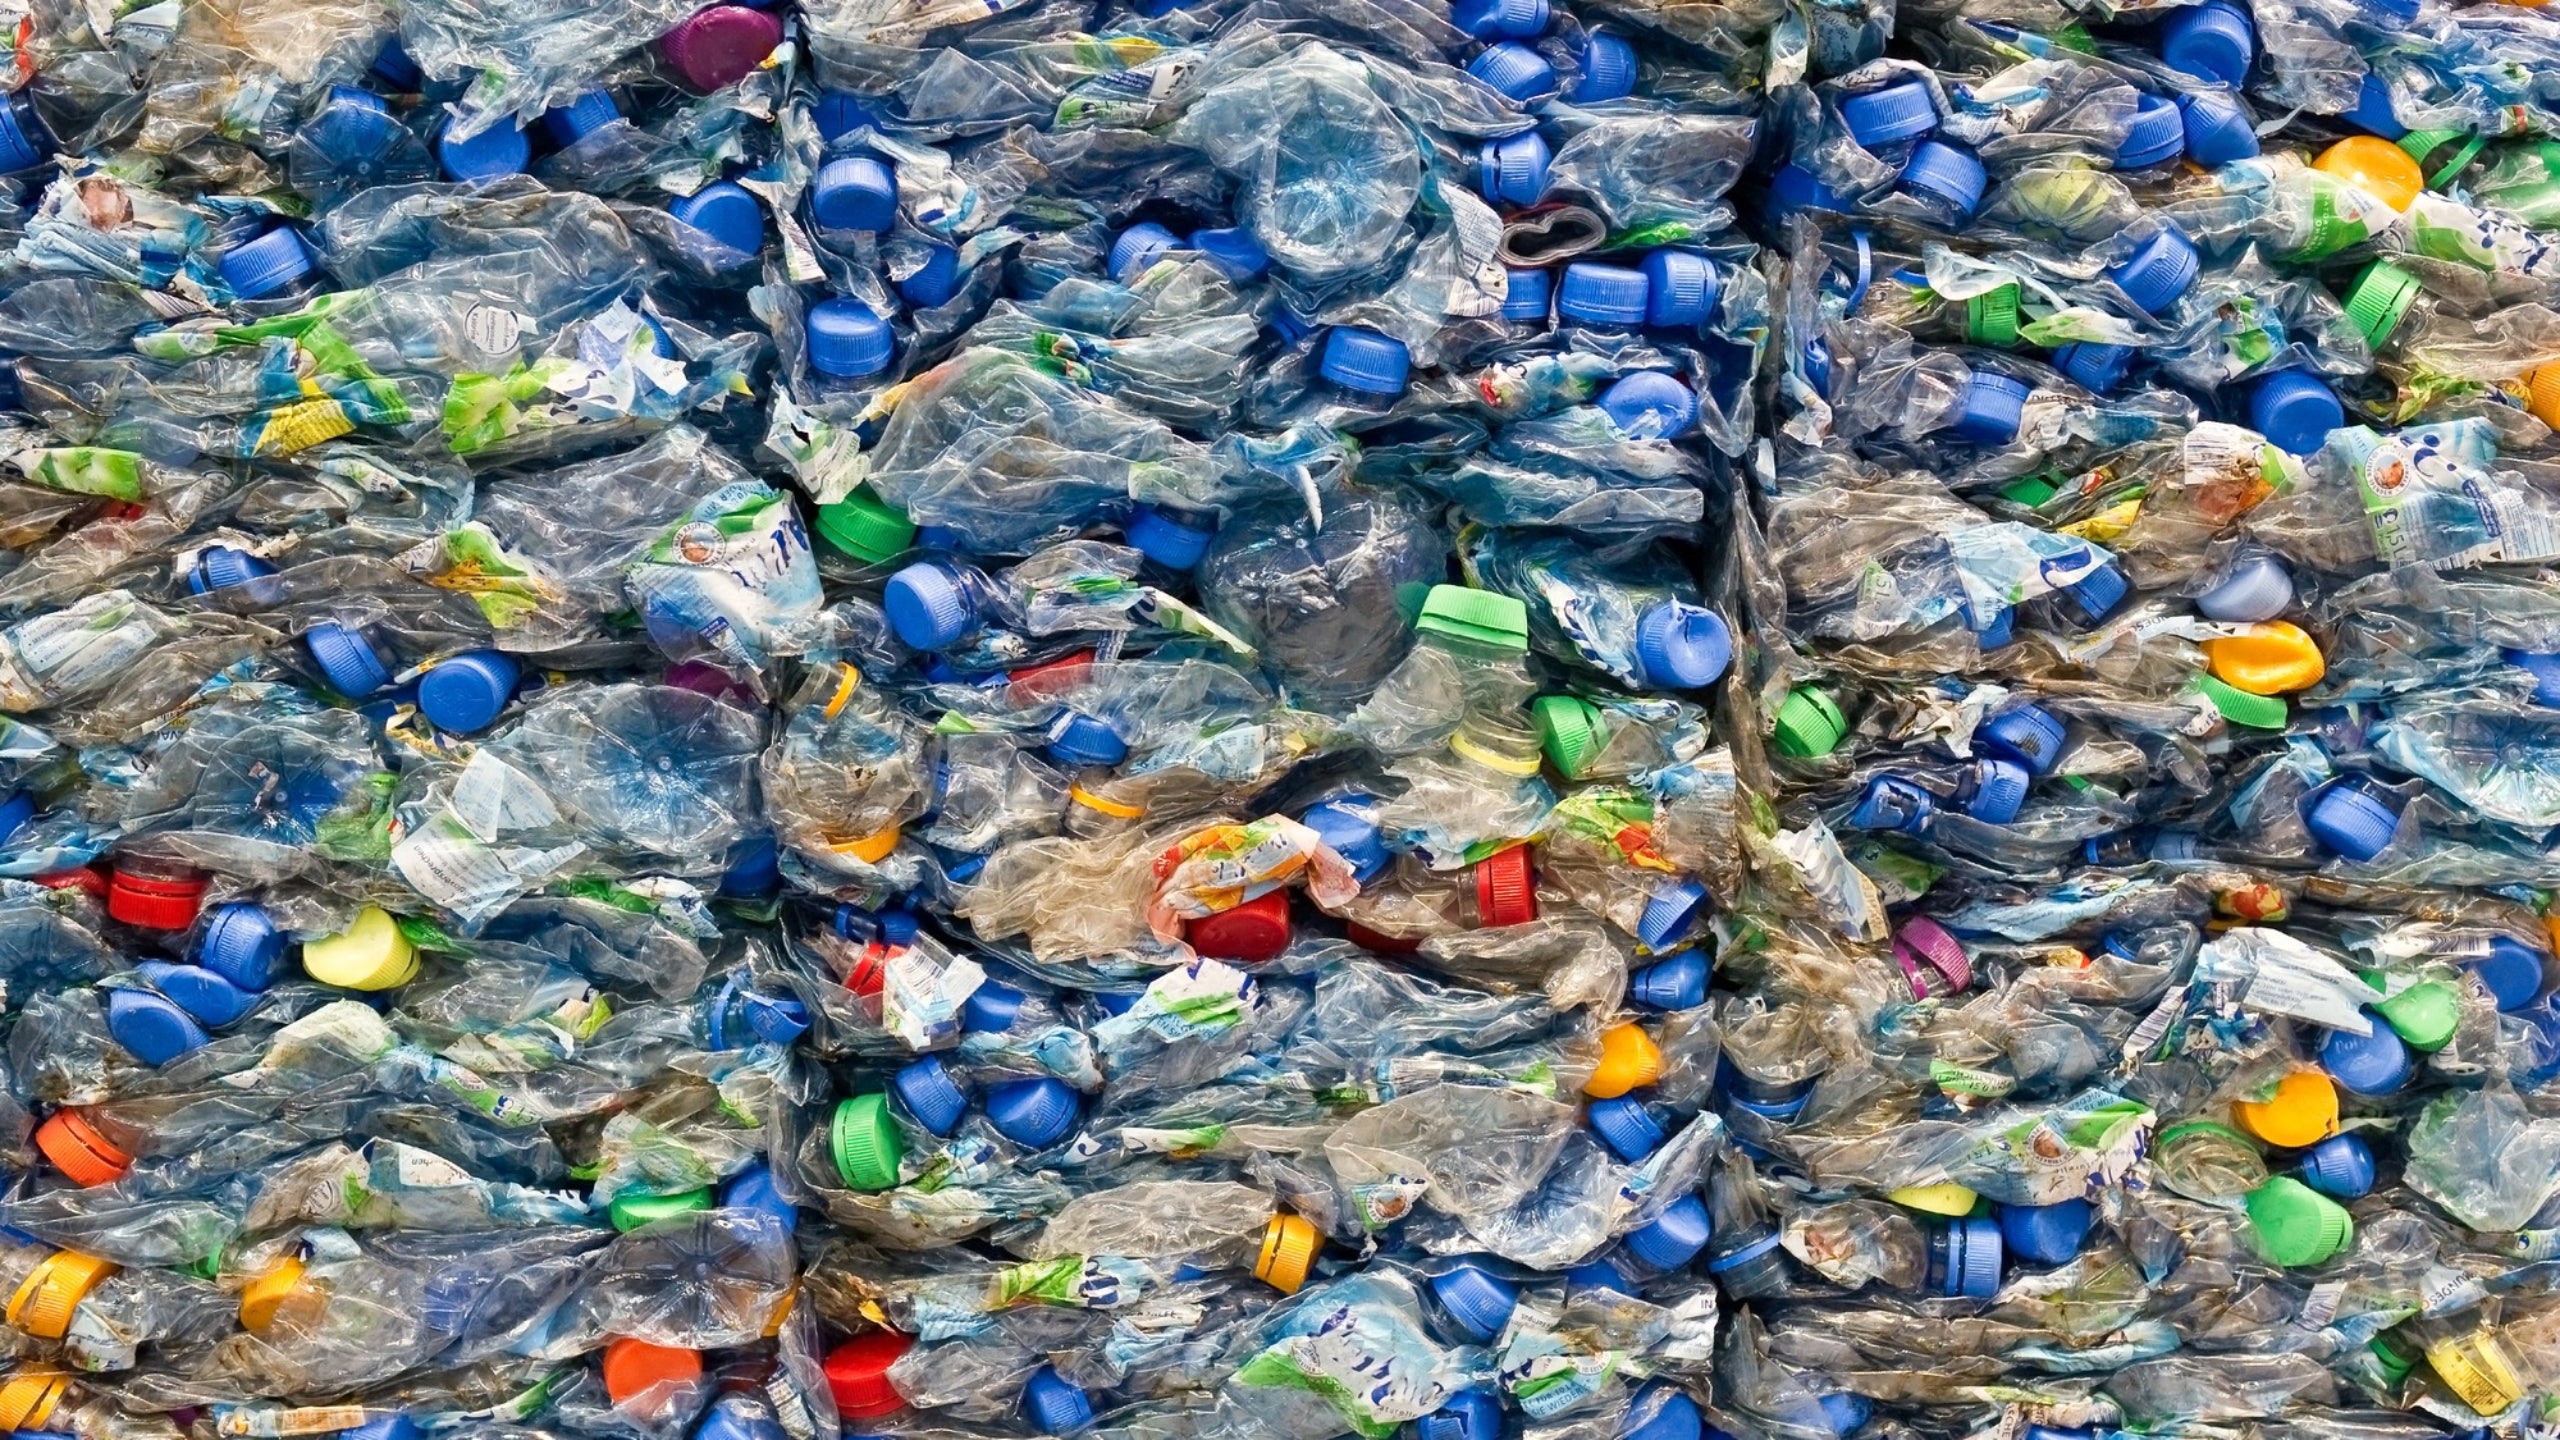 Las naciones ricas exportan mucho más plástico de lo estimado